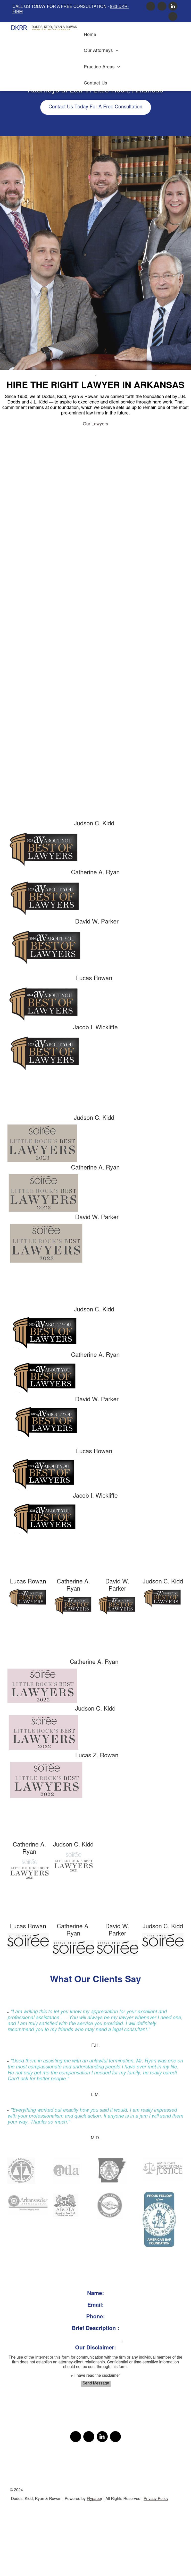 Dodds, Kidd & Ryan - Little Rock AR Lawyers